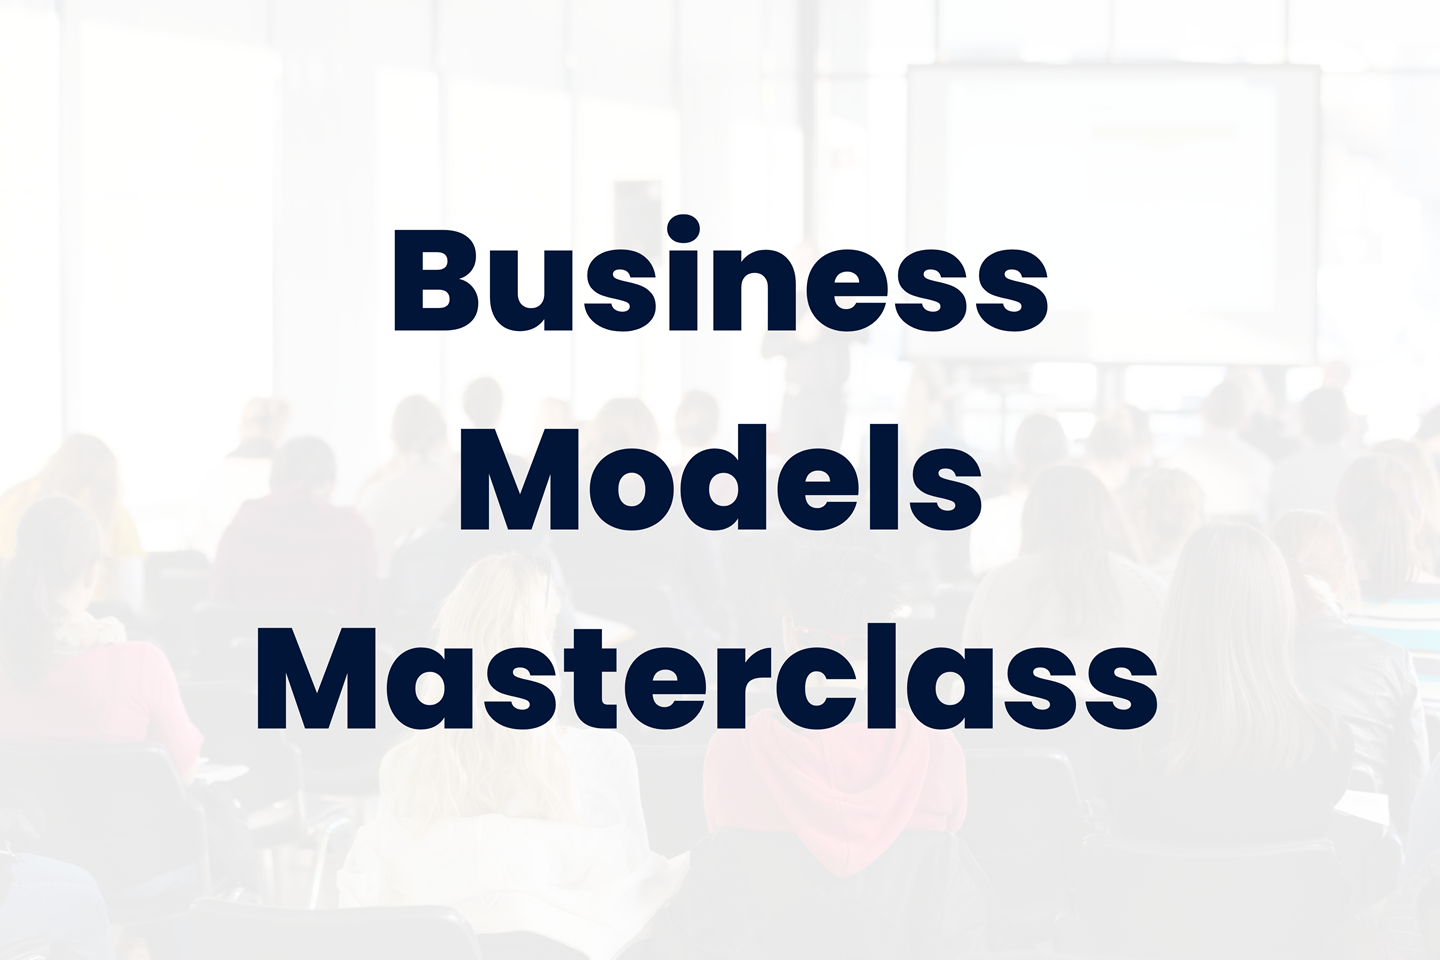 Business model masterclass text